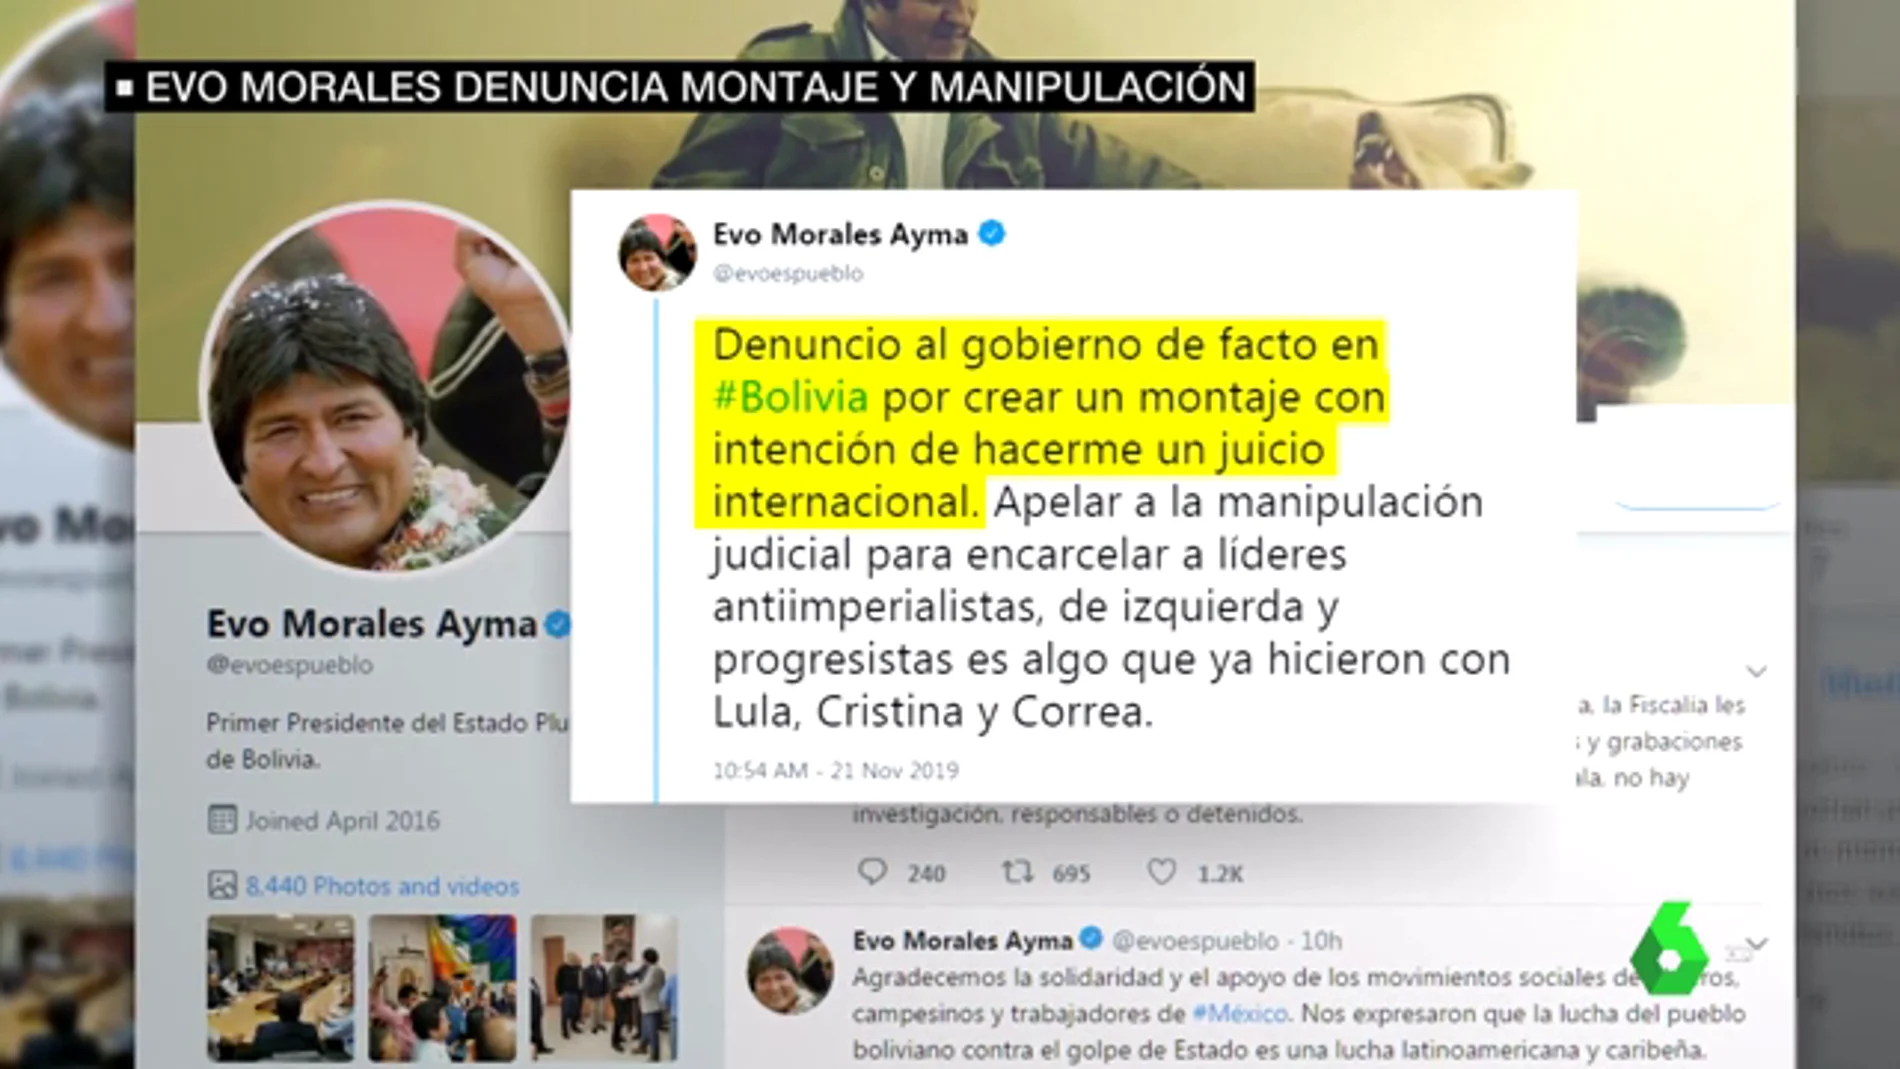 Evo Morales denuncia montaje y manipulación en el vídeo difundido por el gobierno interino de Bolivia